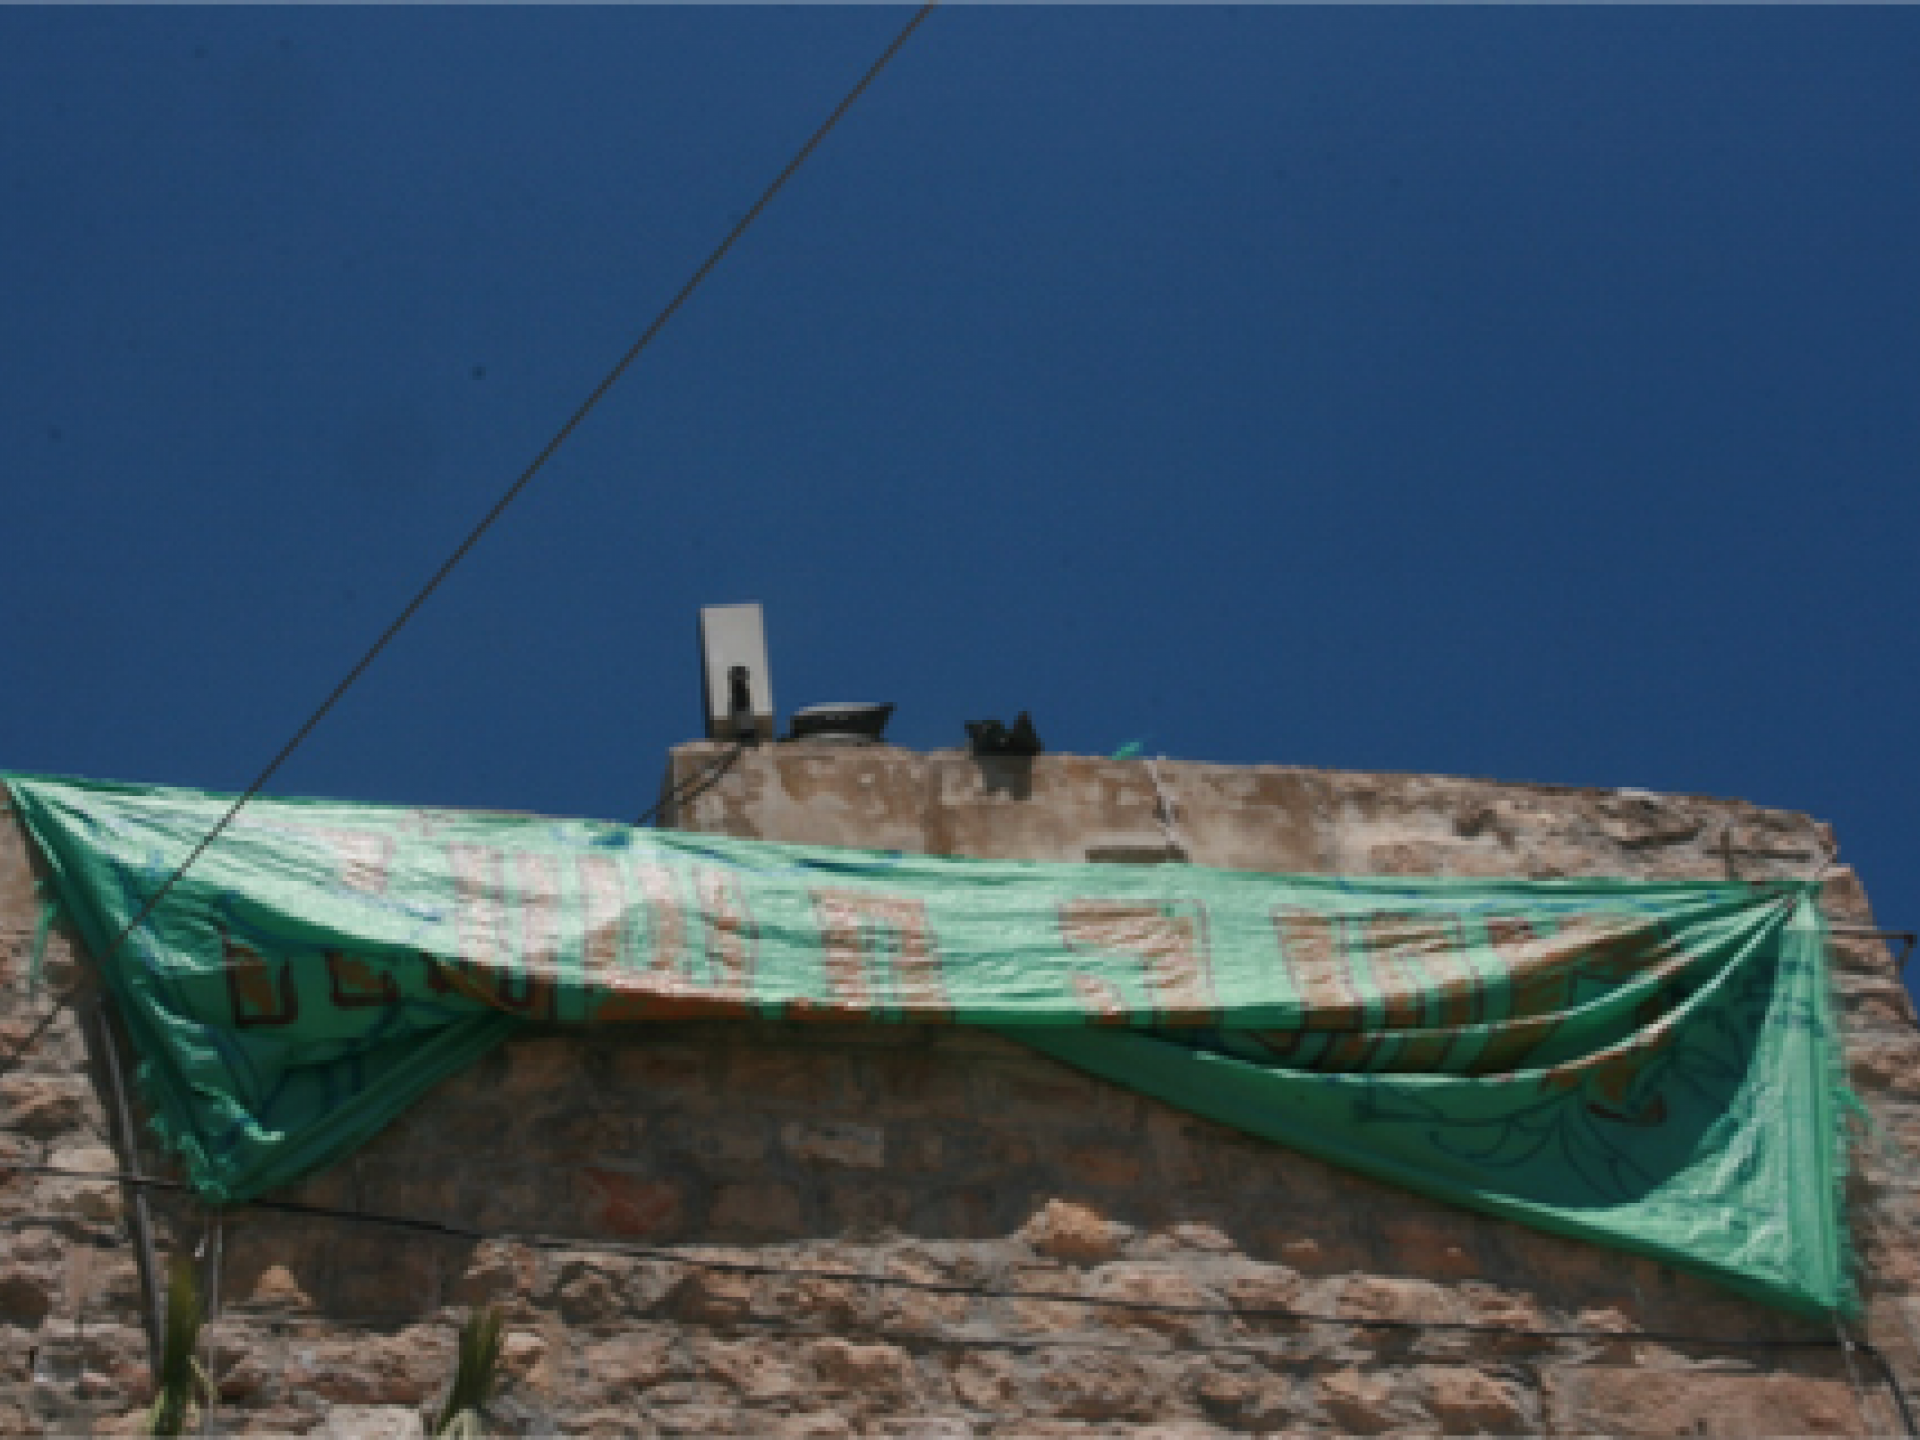 על הבית שבכניסה לשוק הסיטונאי הונפה כרזה ״מחנה תשע״ח״